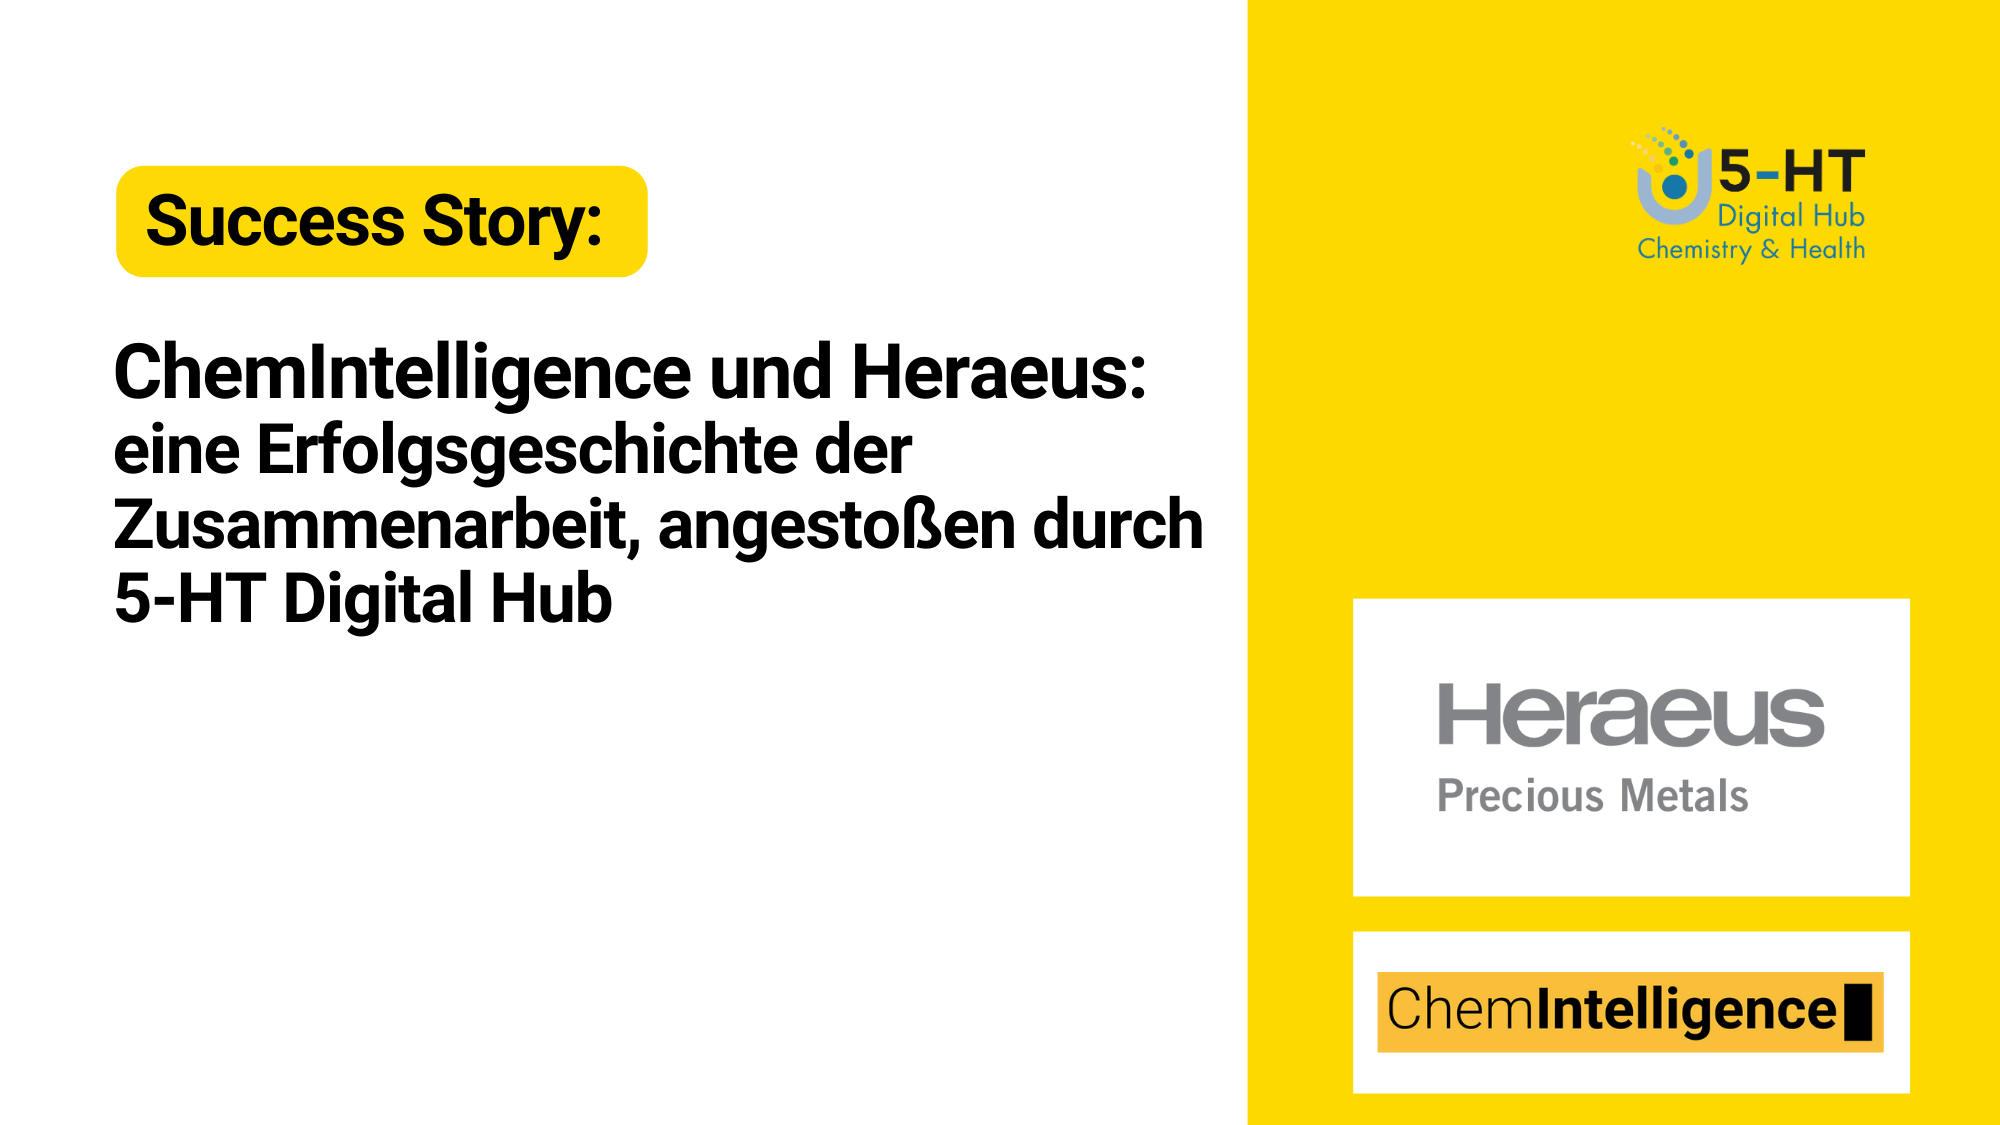 ChemIntelligence und Heraeus: eine Erfolgsgeschichte der Zusammenarbeit, ausgelöst durch 5-HT Digital Hub